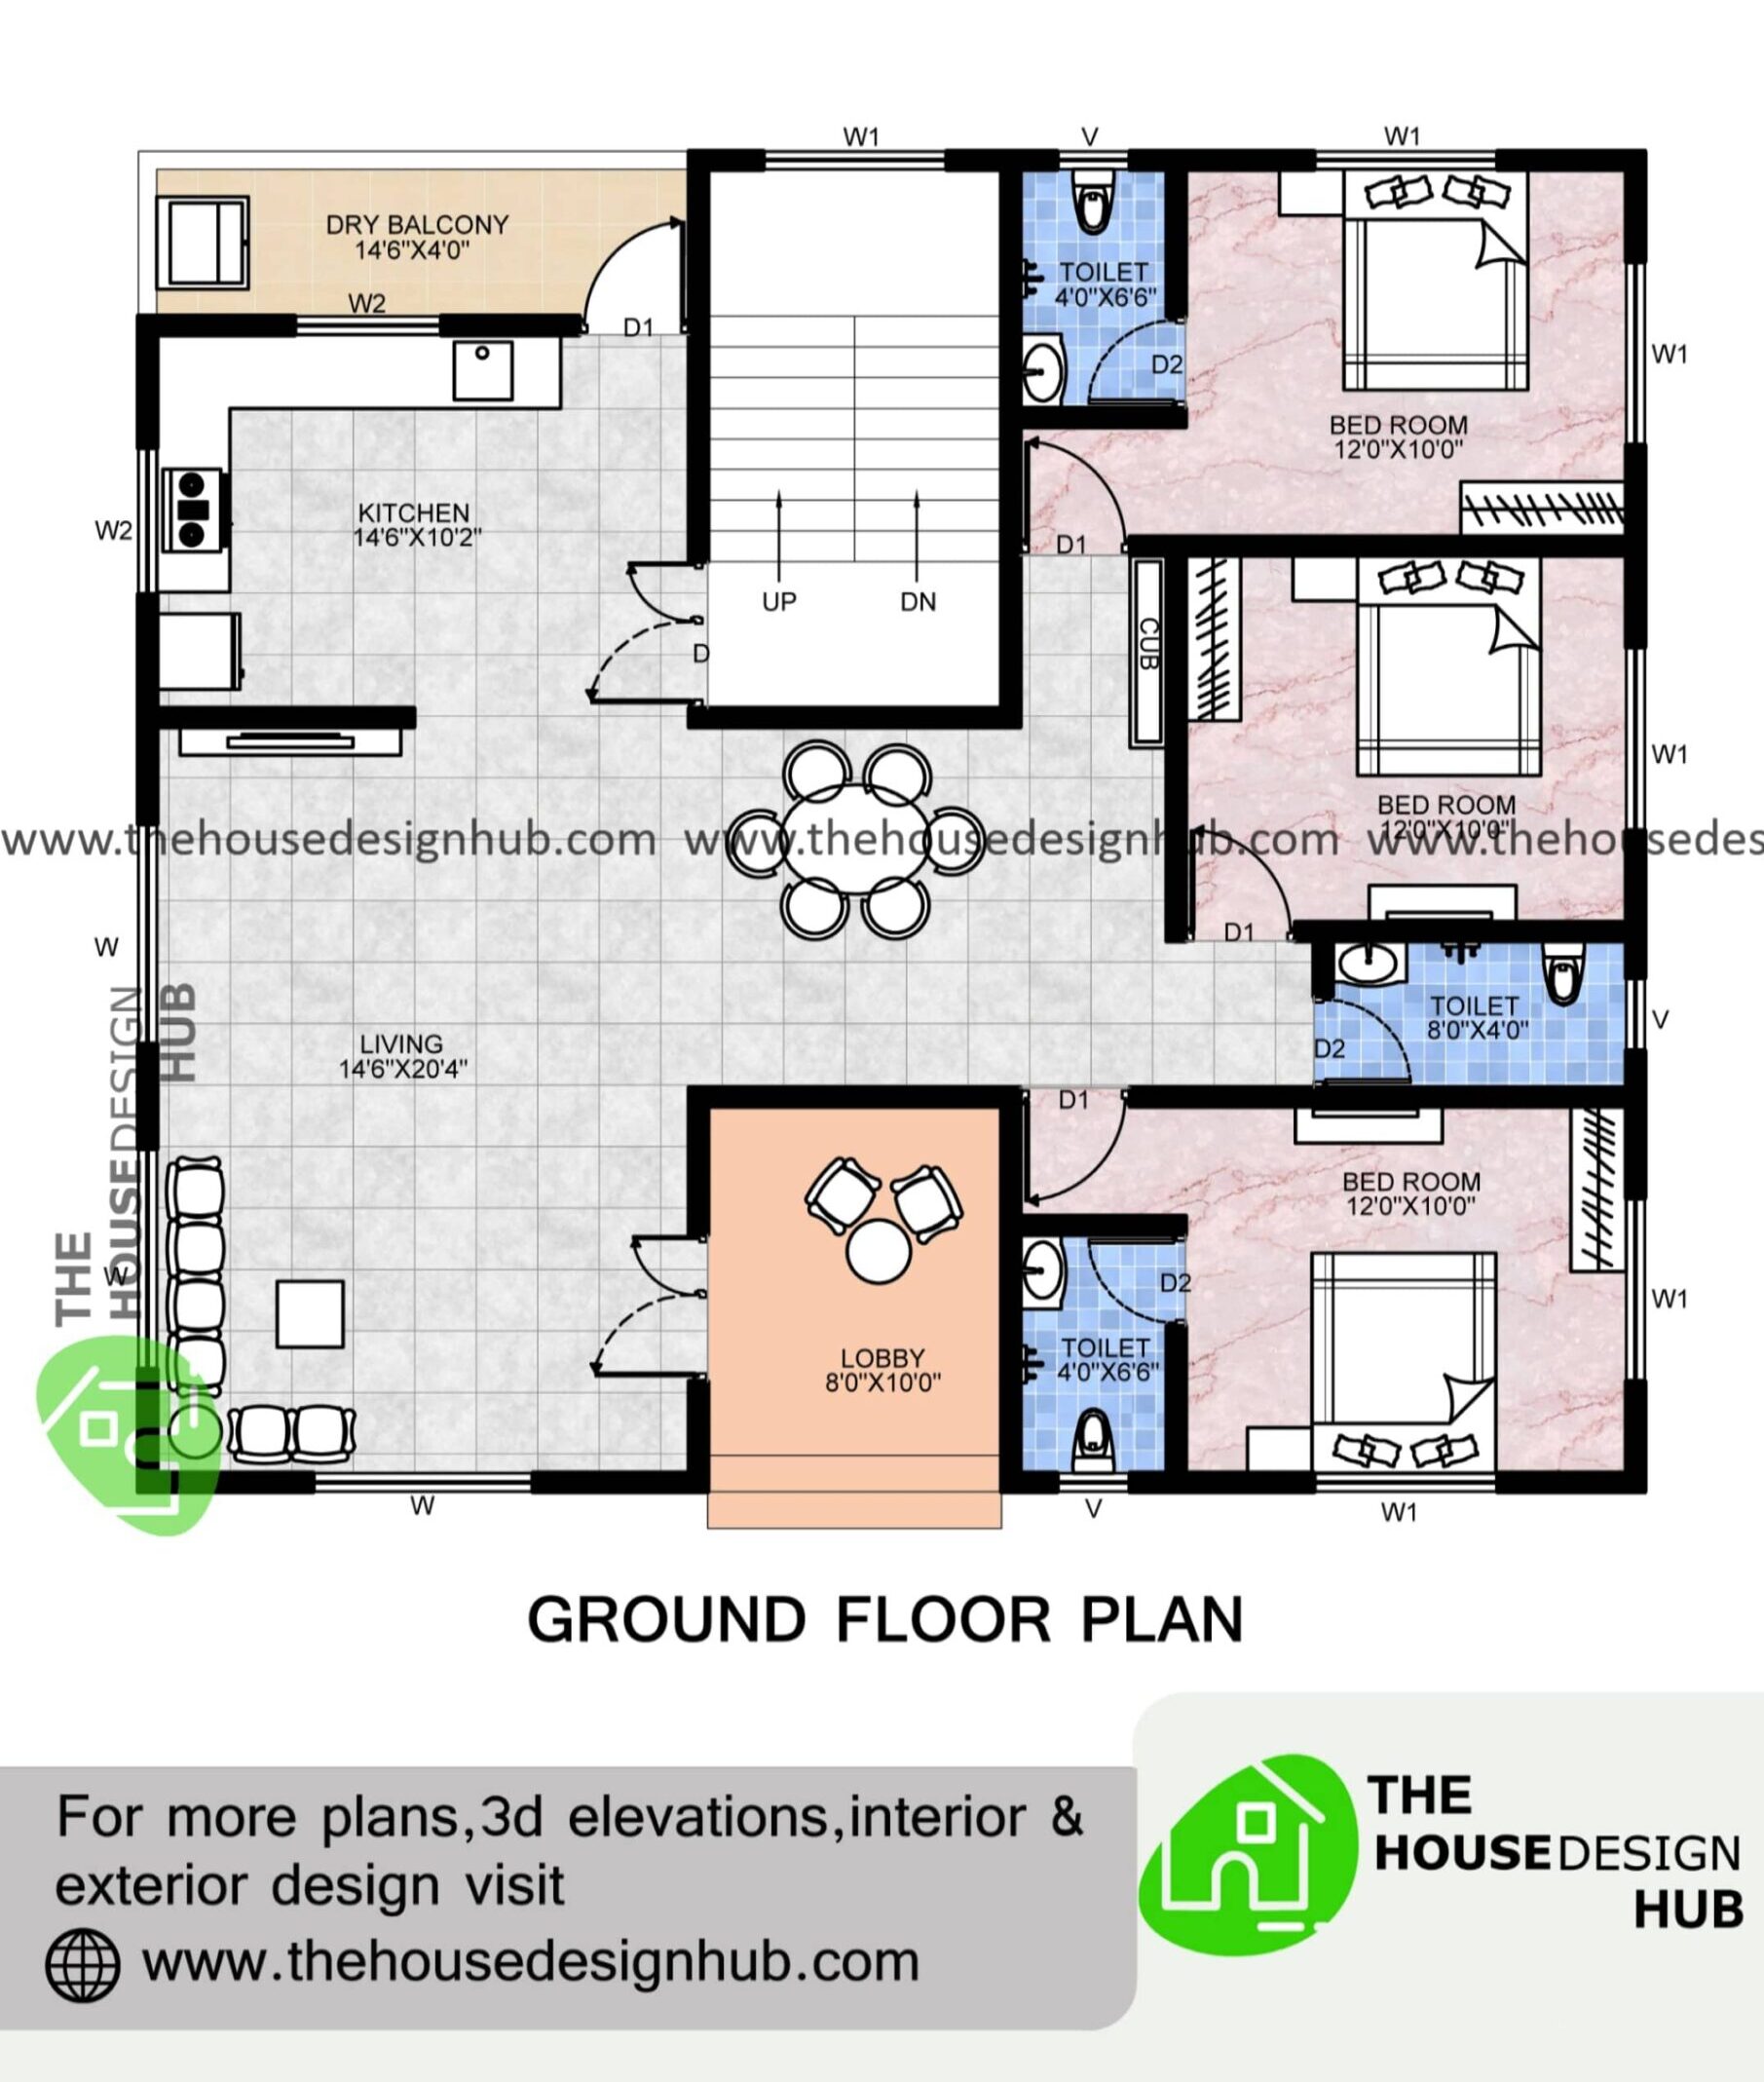 3 Bedroom Plan In 1500 Sq Ft